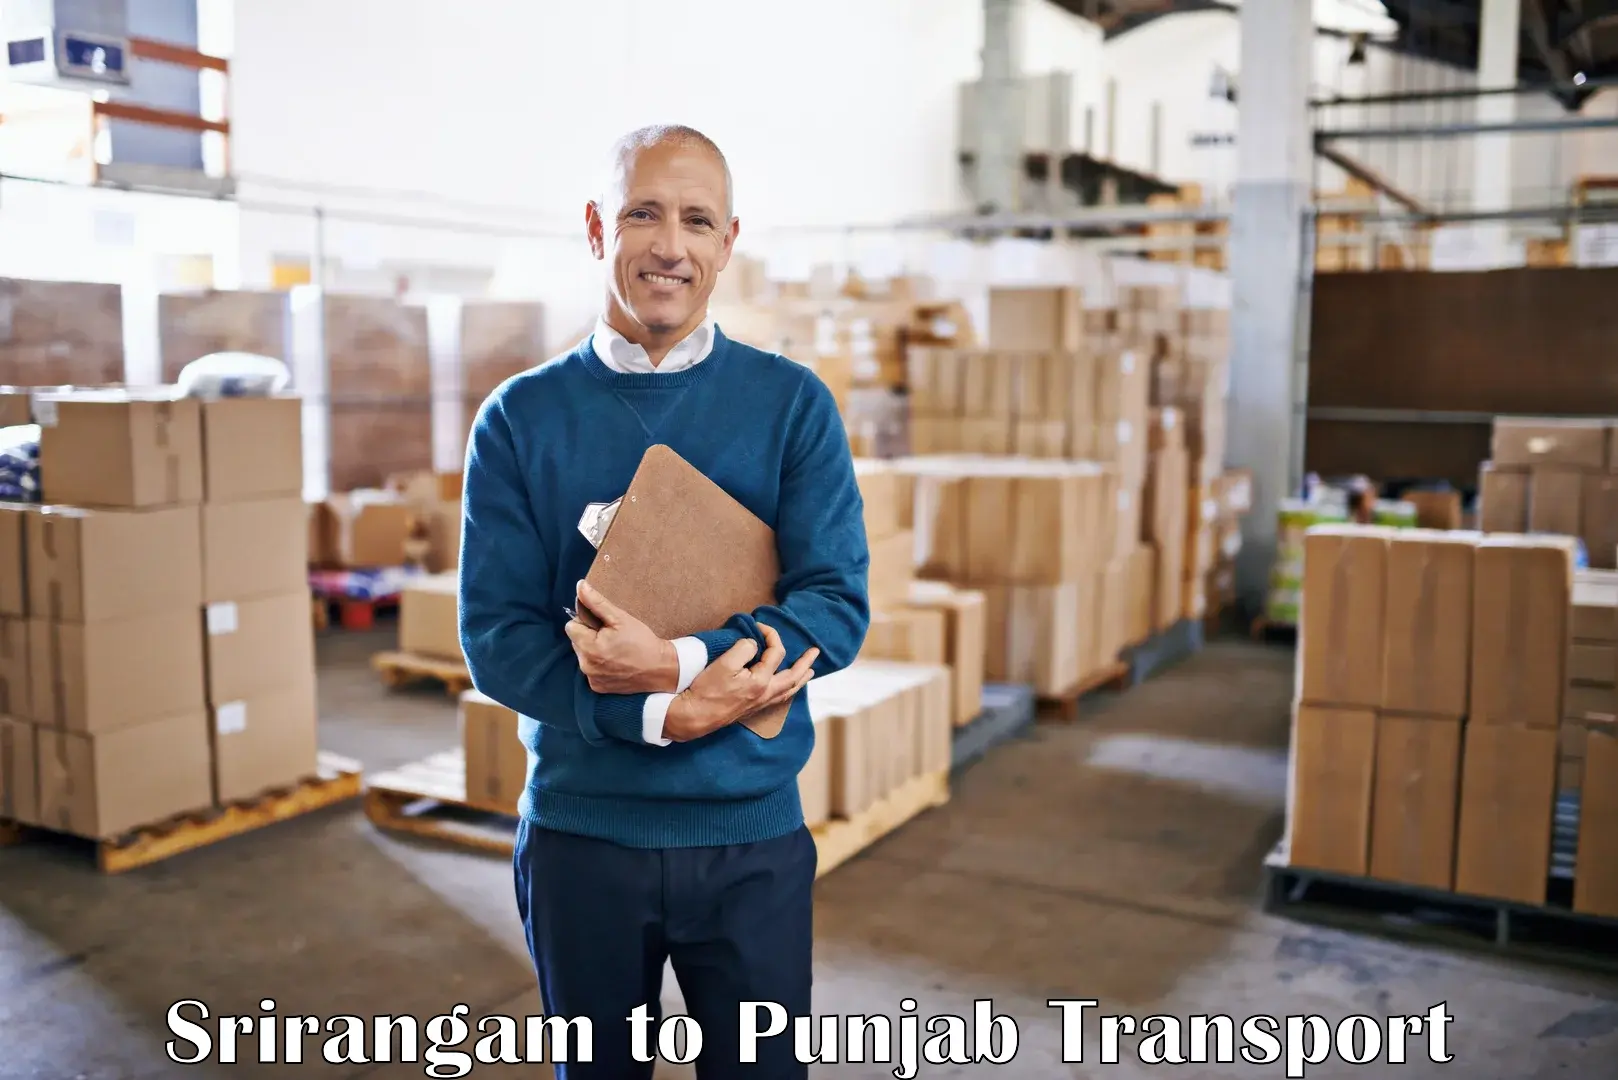 Bike shipping service Srirangam to Punjab